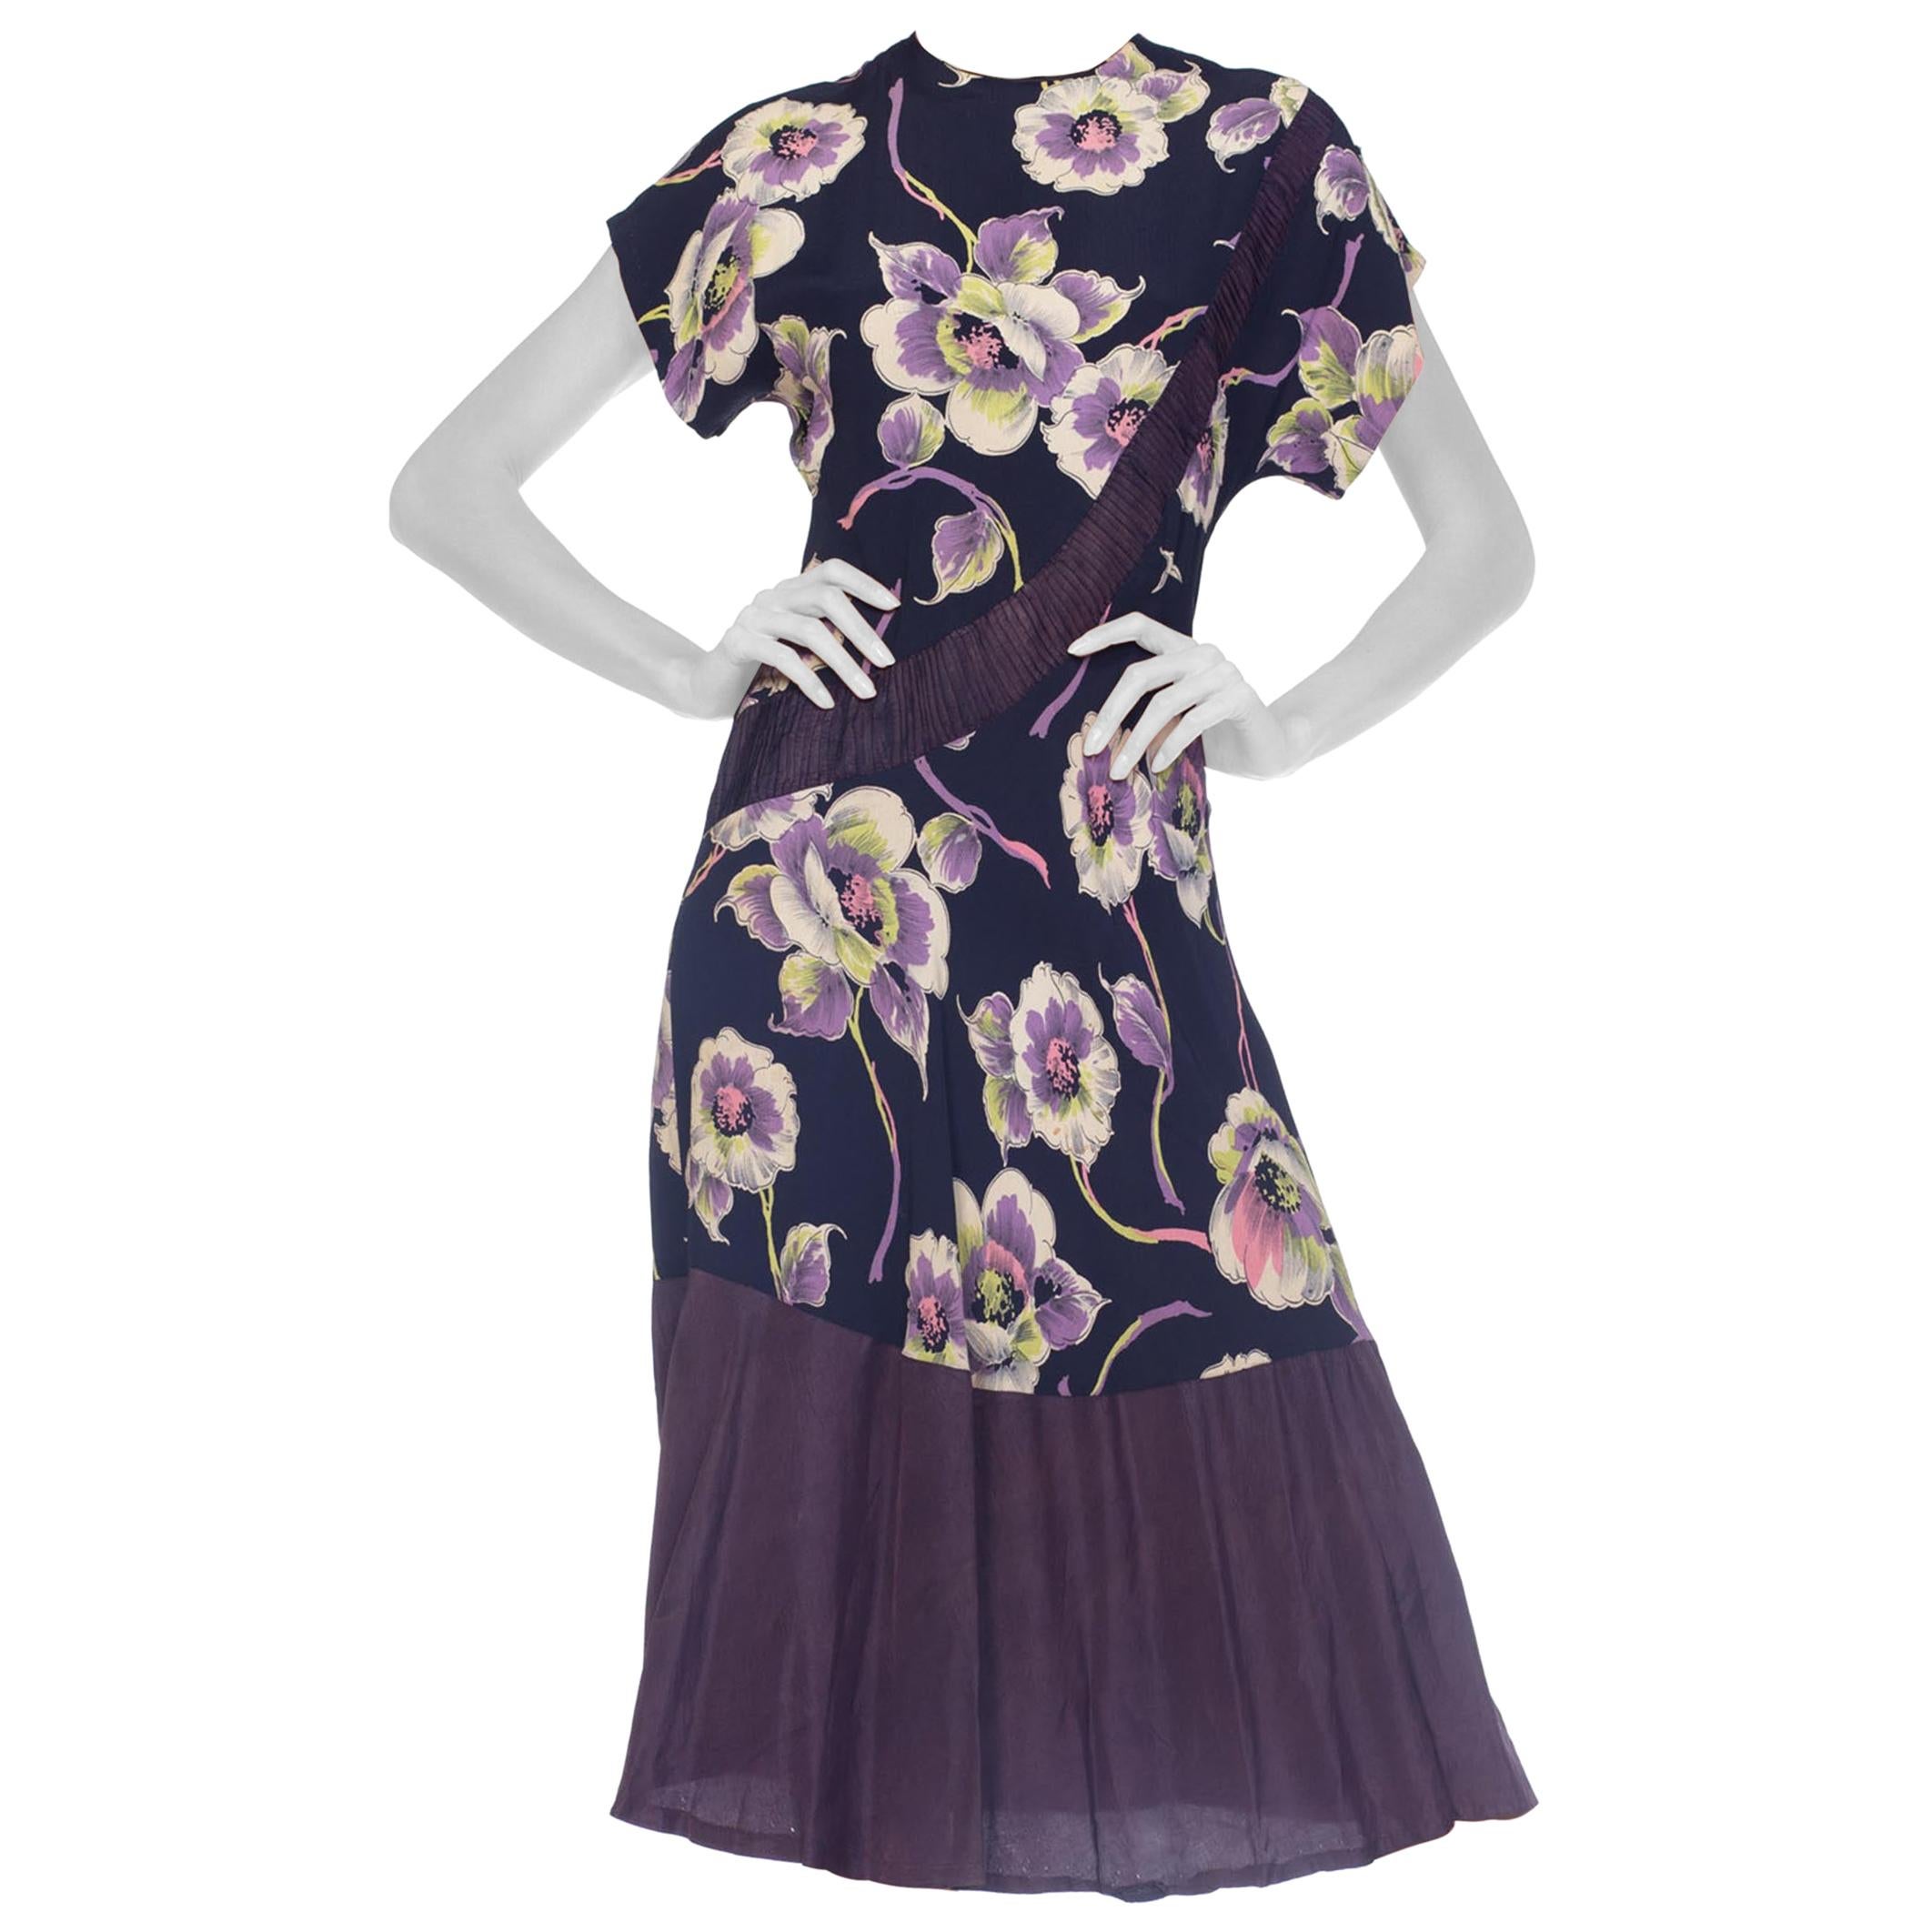 Marineblauer, lindgrüner und violetter Rayon-Blumendruck aus den 1940er Jahren  Kleid mit Taftsaum